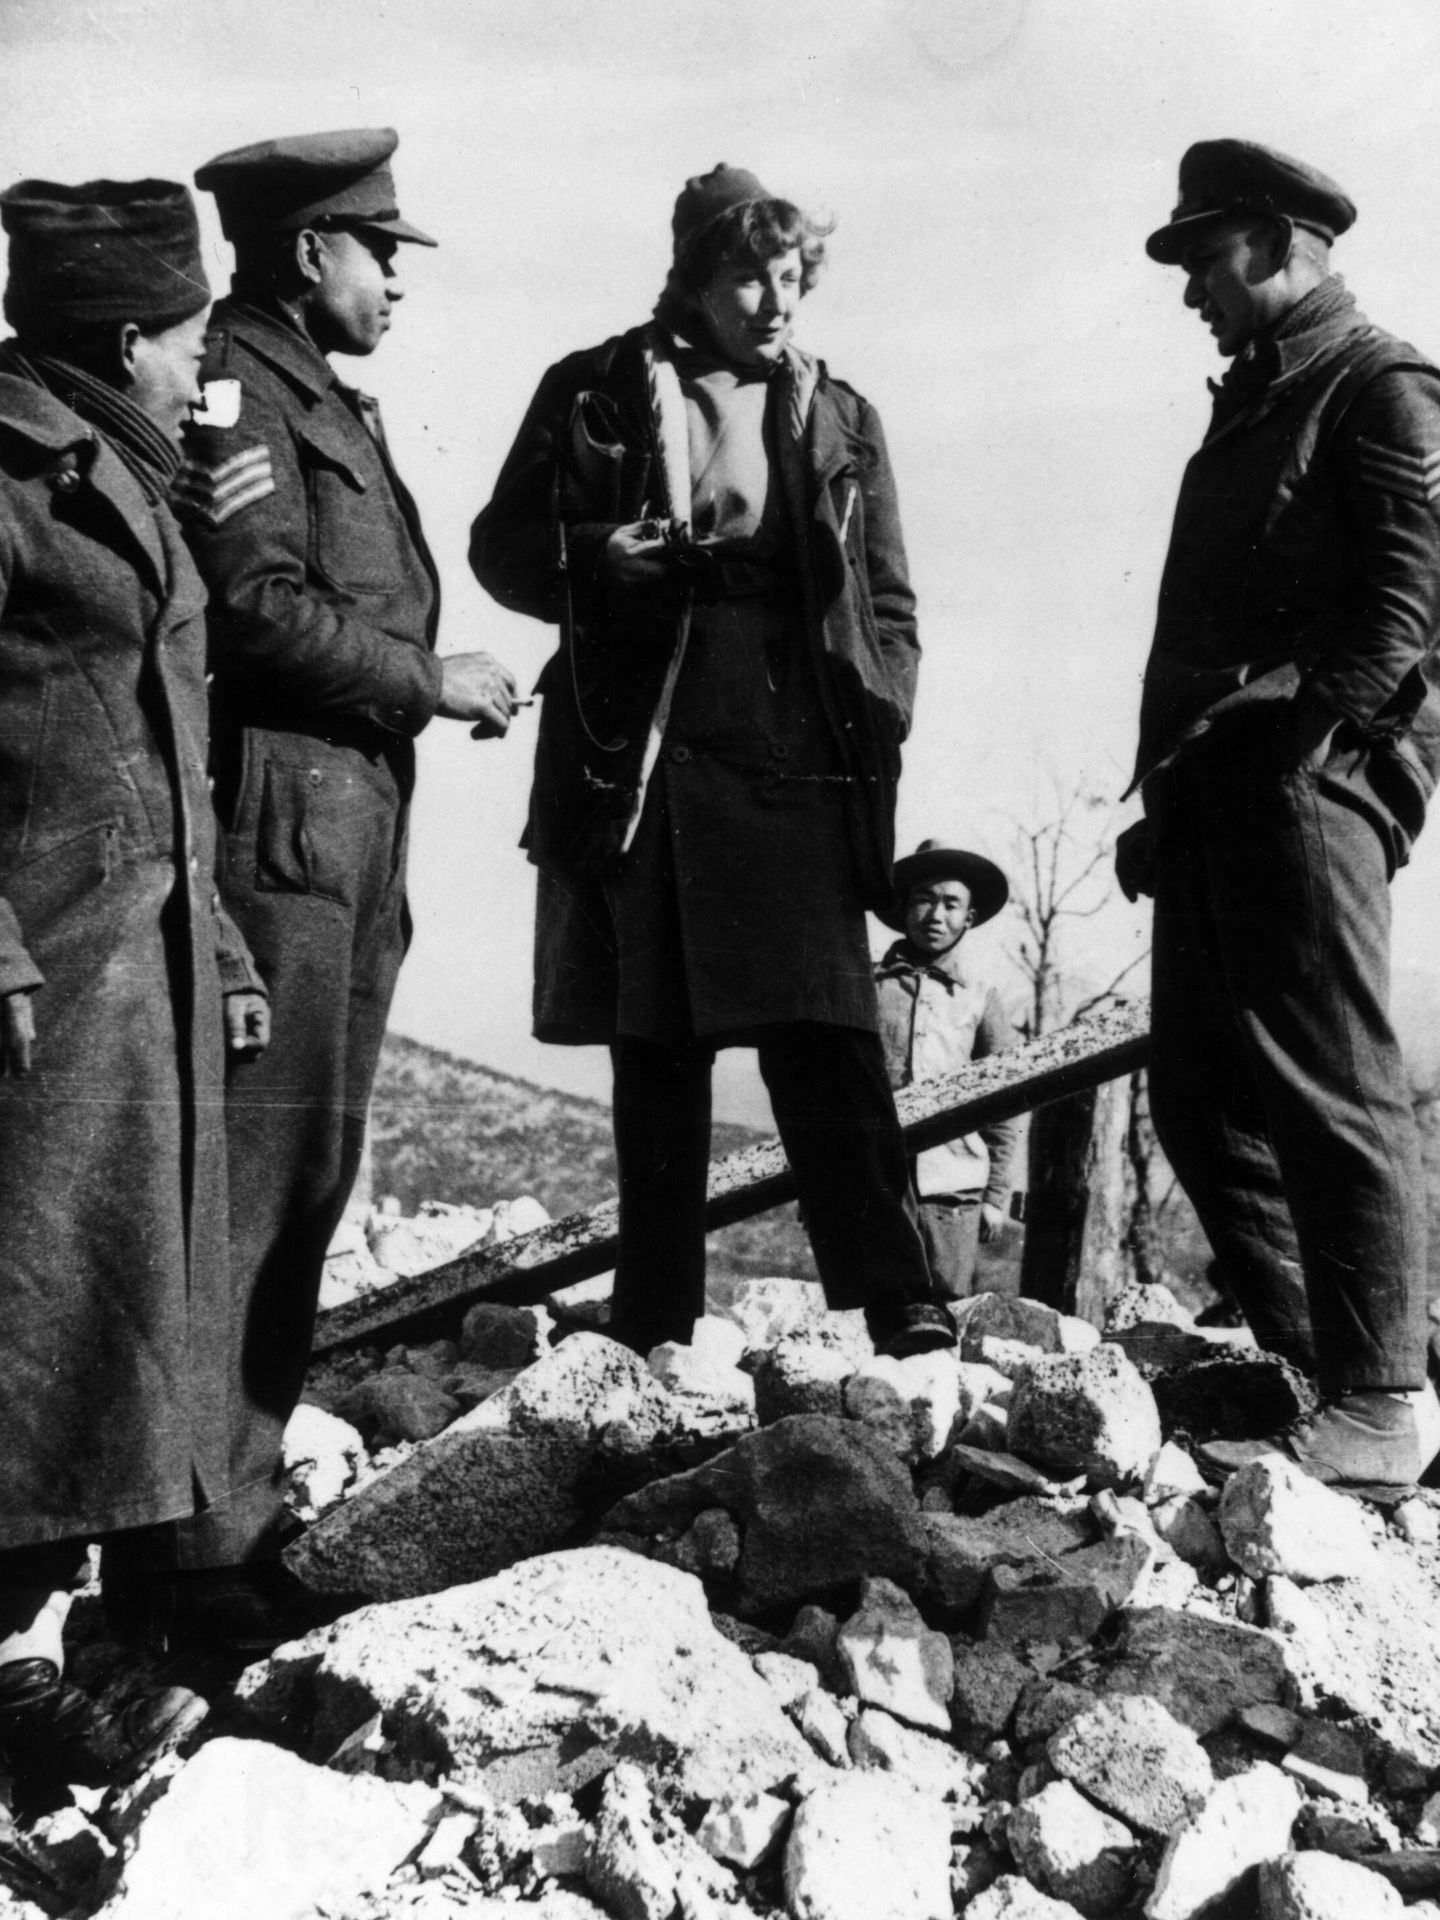 La periodista y escritora Martha Gellhorn, mujer de Ernest Hemingway, en 1944 hablando con soldados británicos en Italia. (Getty Images)